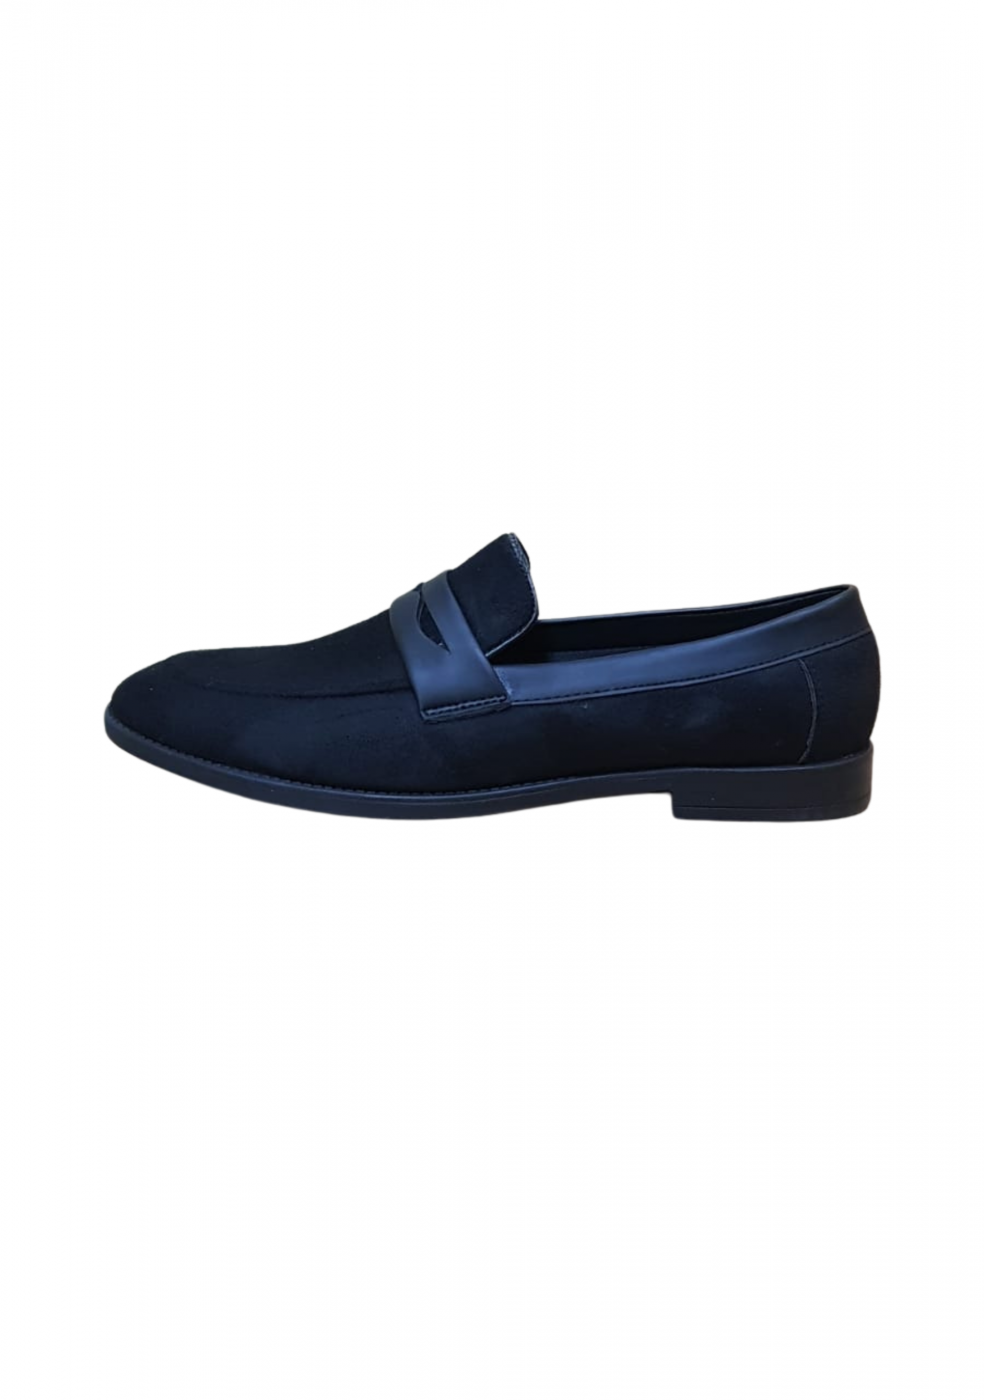 XSTOM Black Formal Shoes For Men